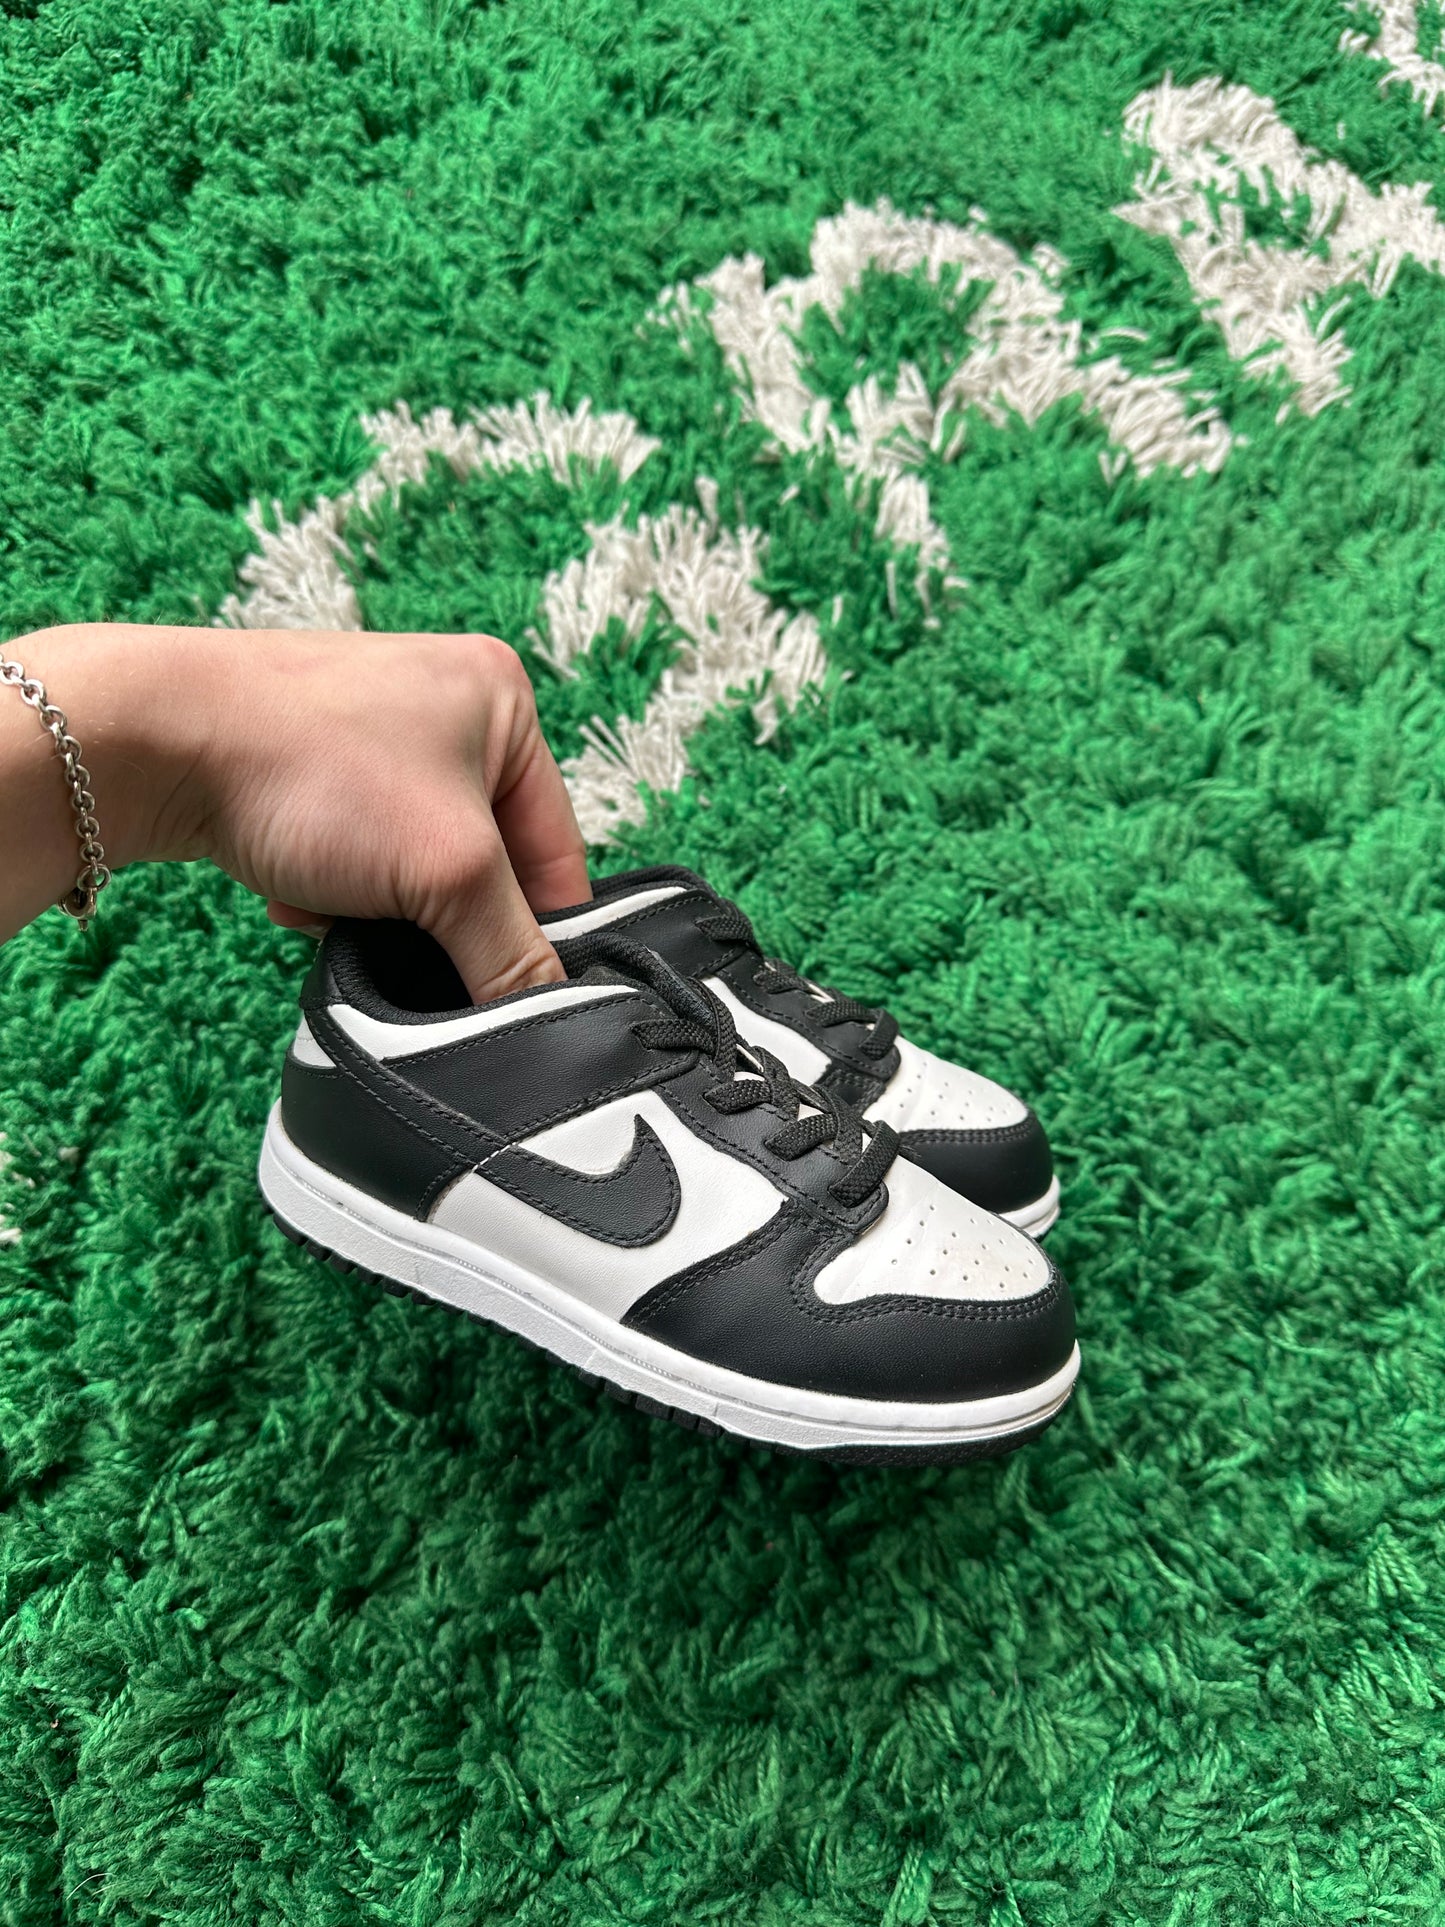 Nike Dunk Low “Panda” Toddler